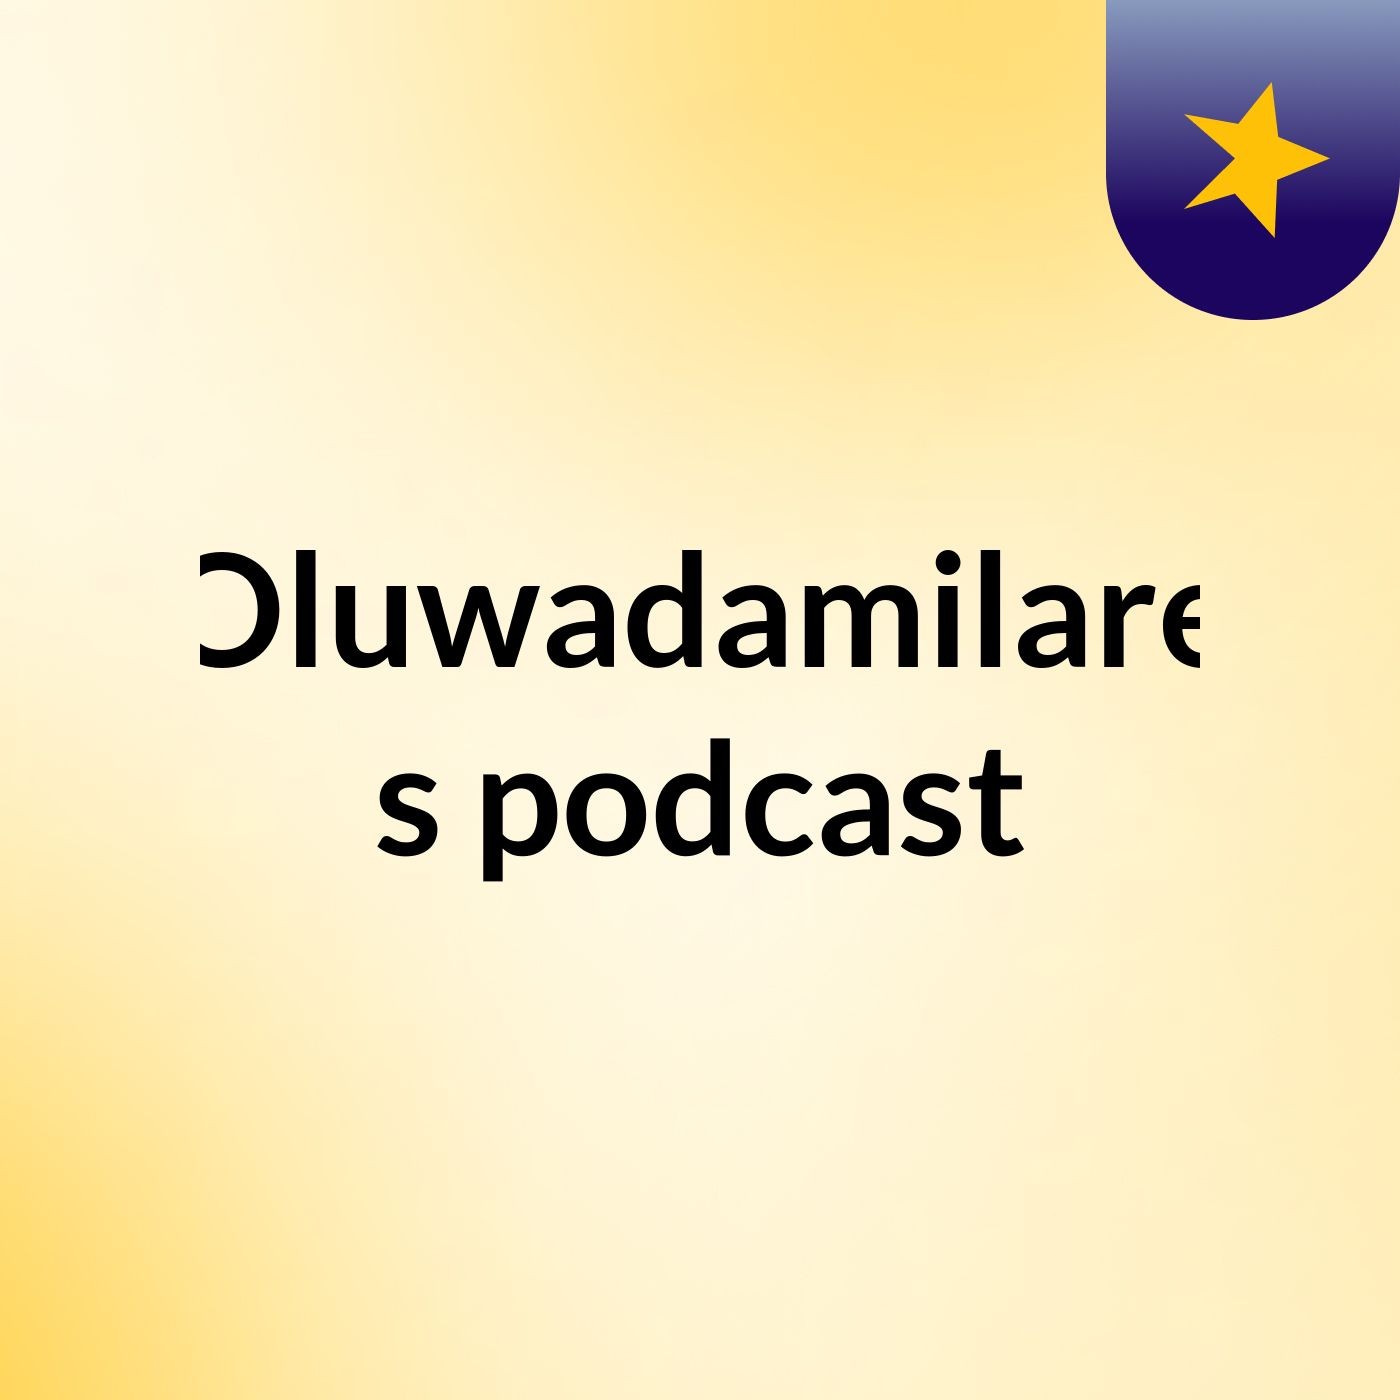 Episode 2 - Oluwadamilare's podcast